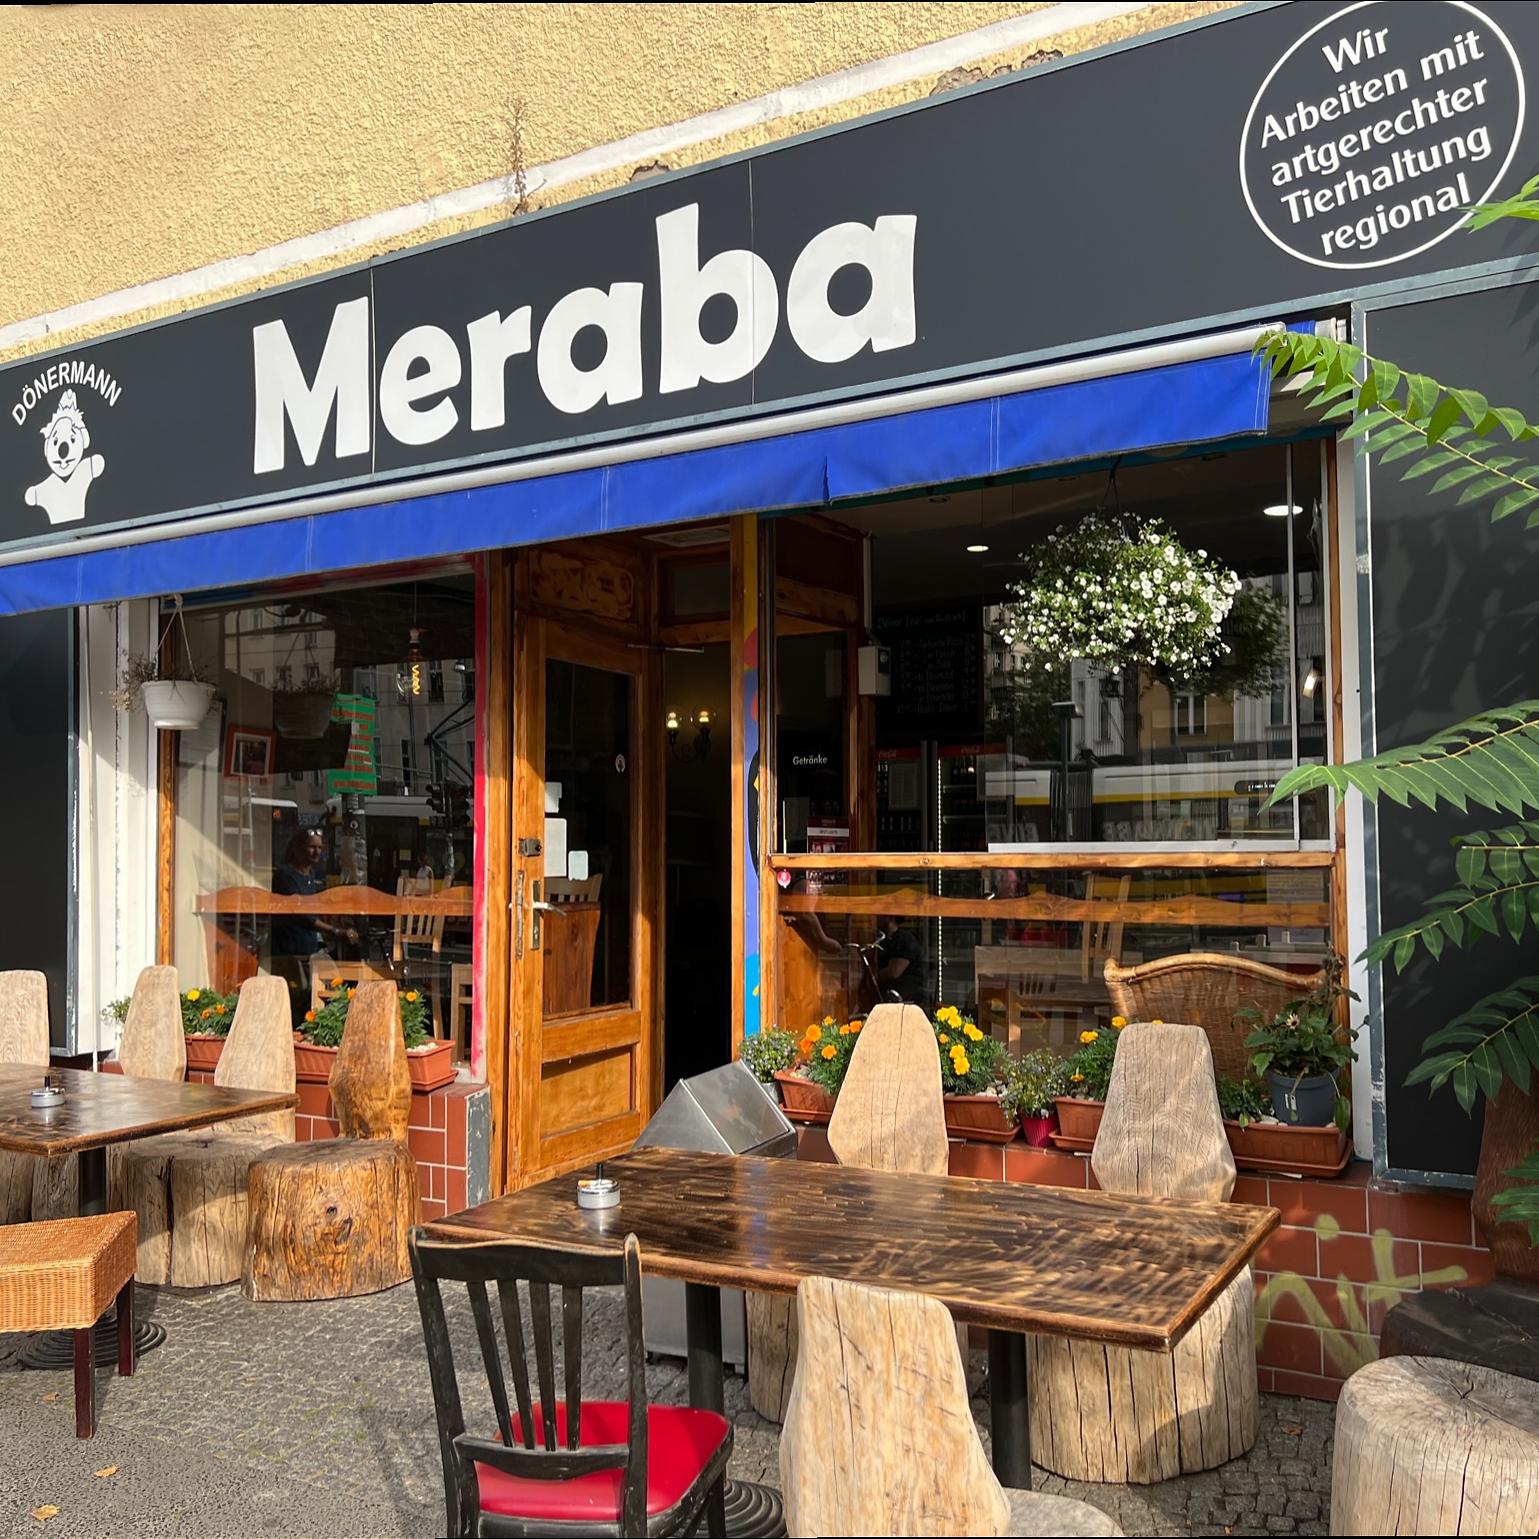 Restaurant "Meraba" in Berlin